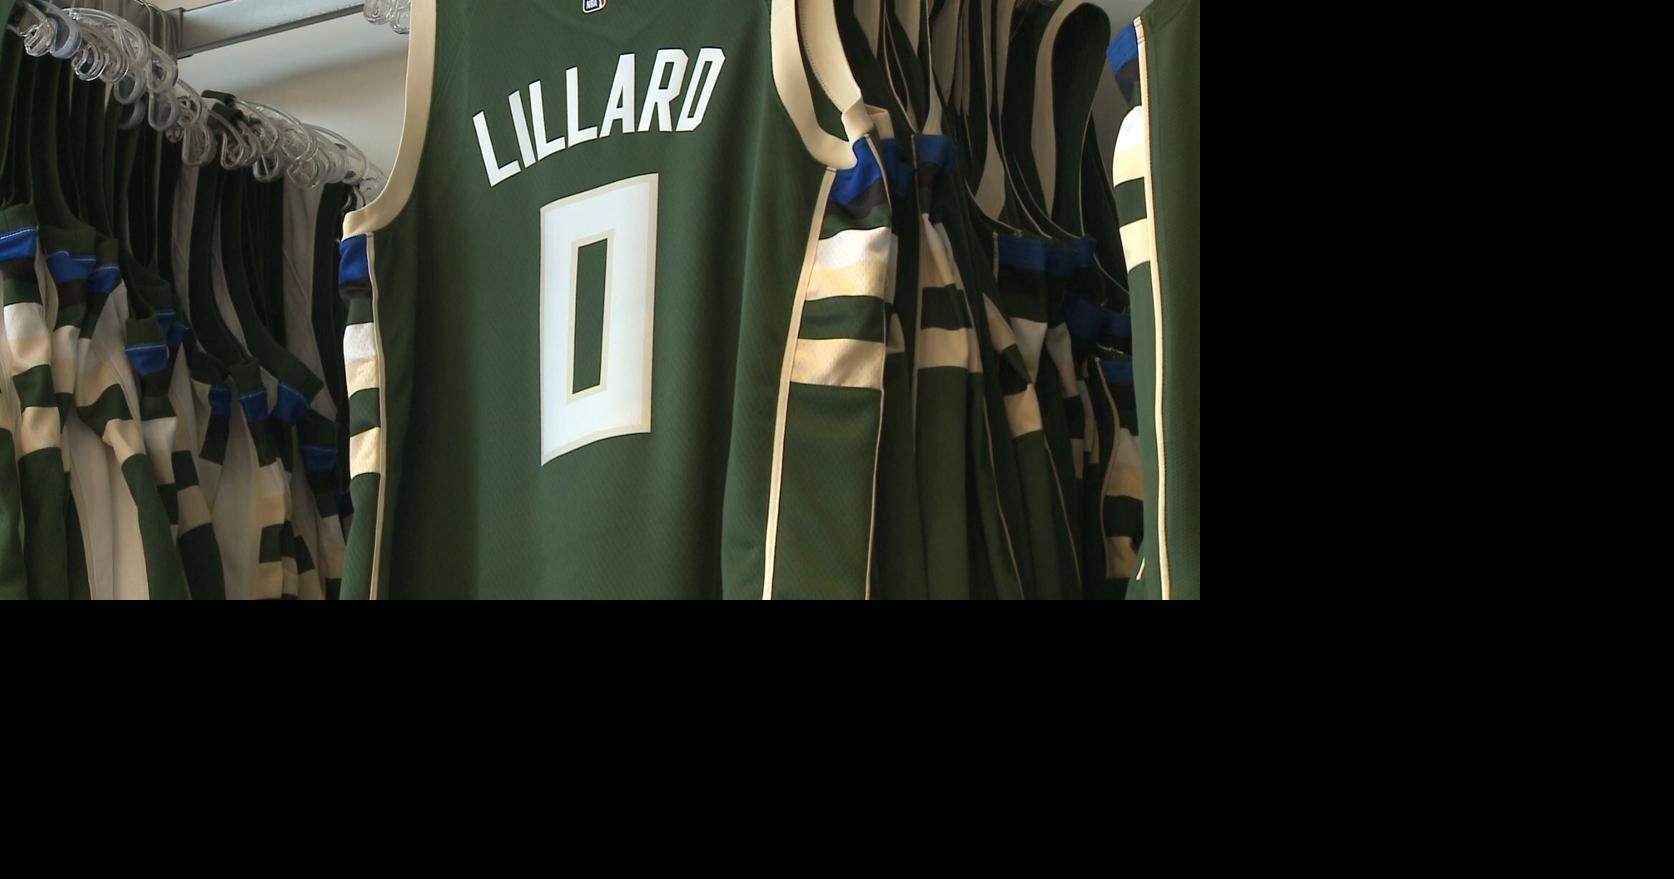 Milwaukee Bucks already selling Damian Lillard jerseys, News